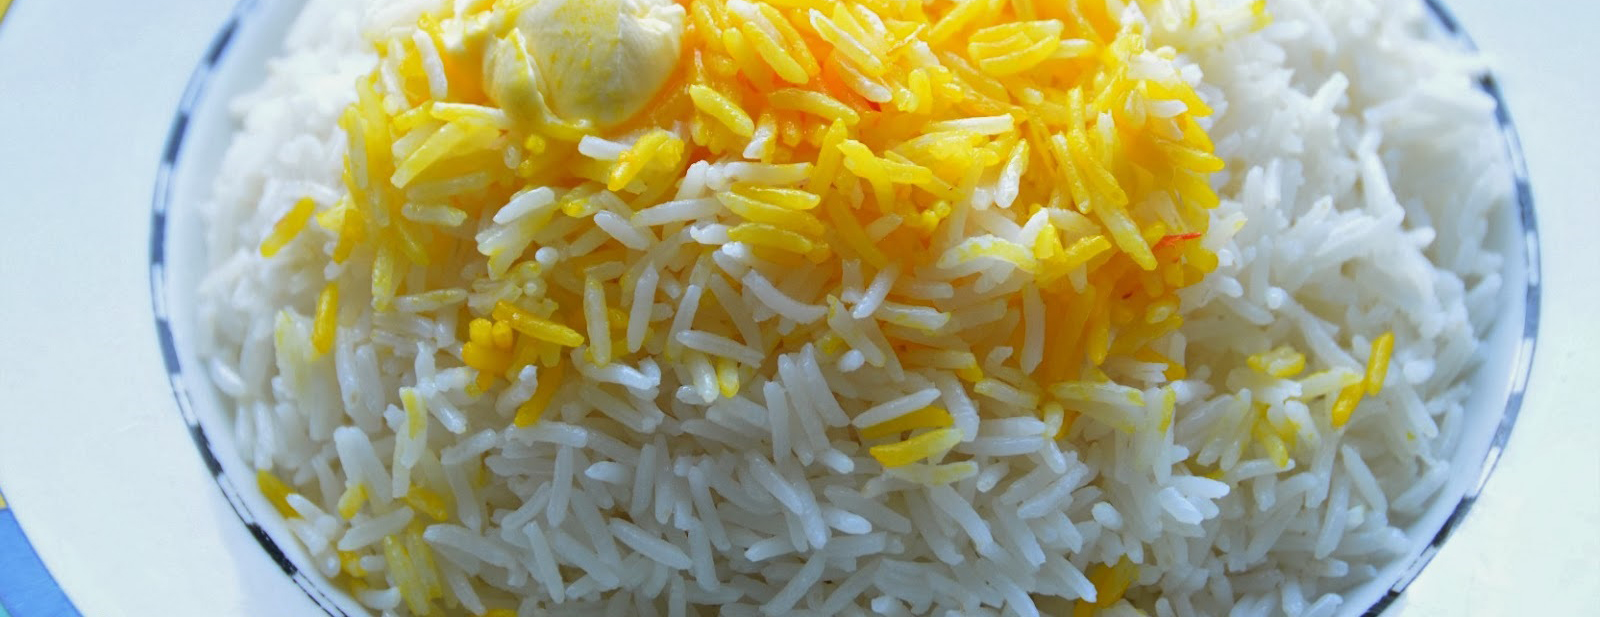 فوت و فن پخت برنج برای پلو